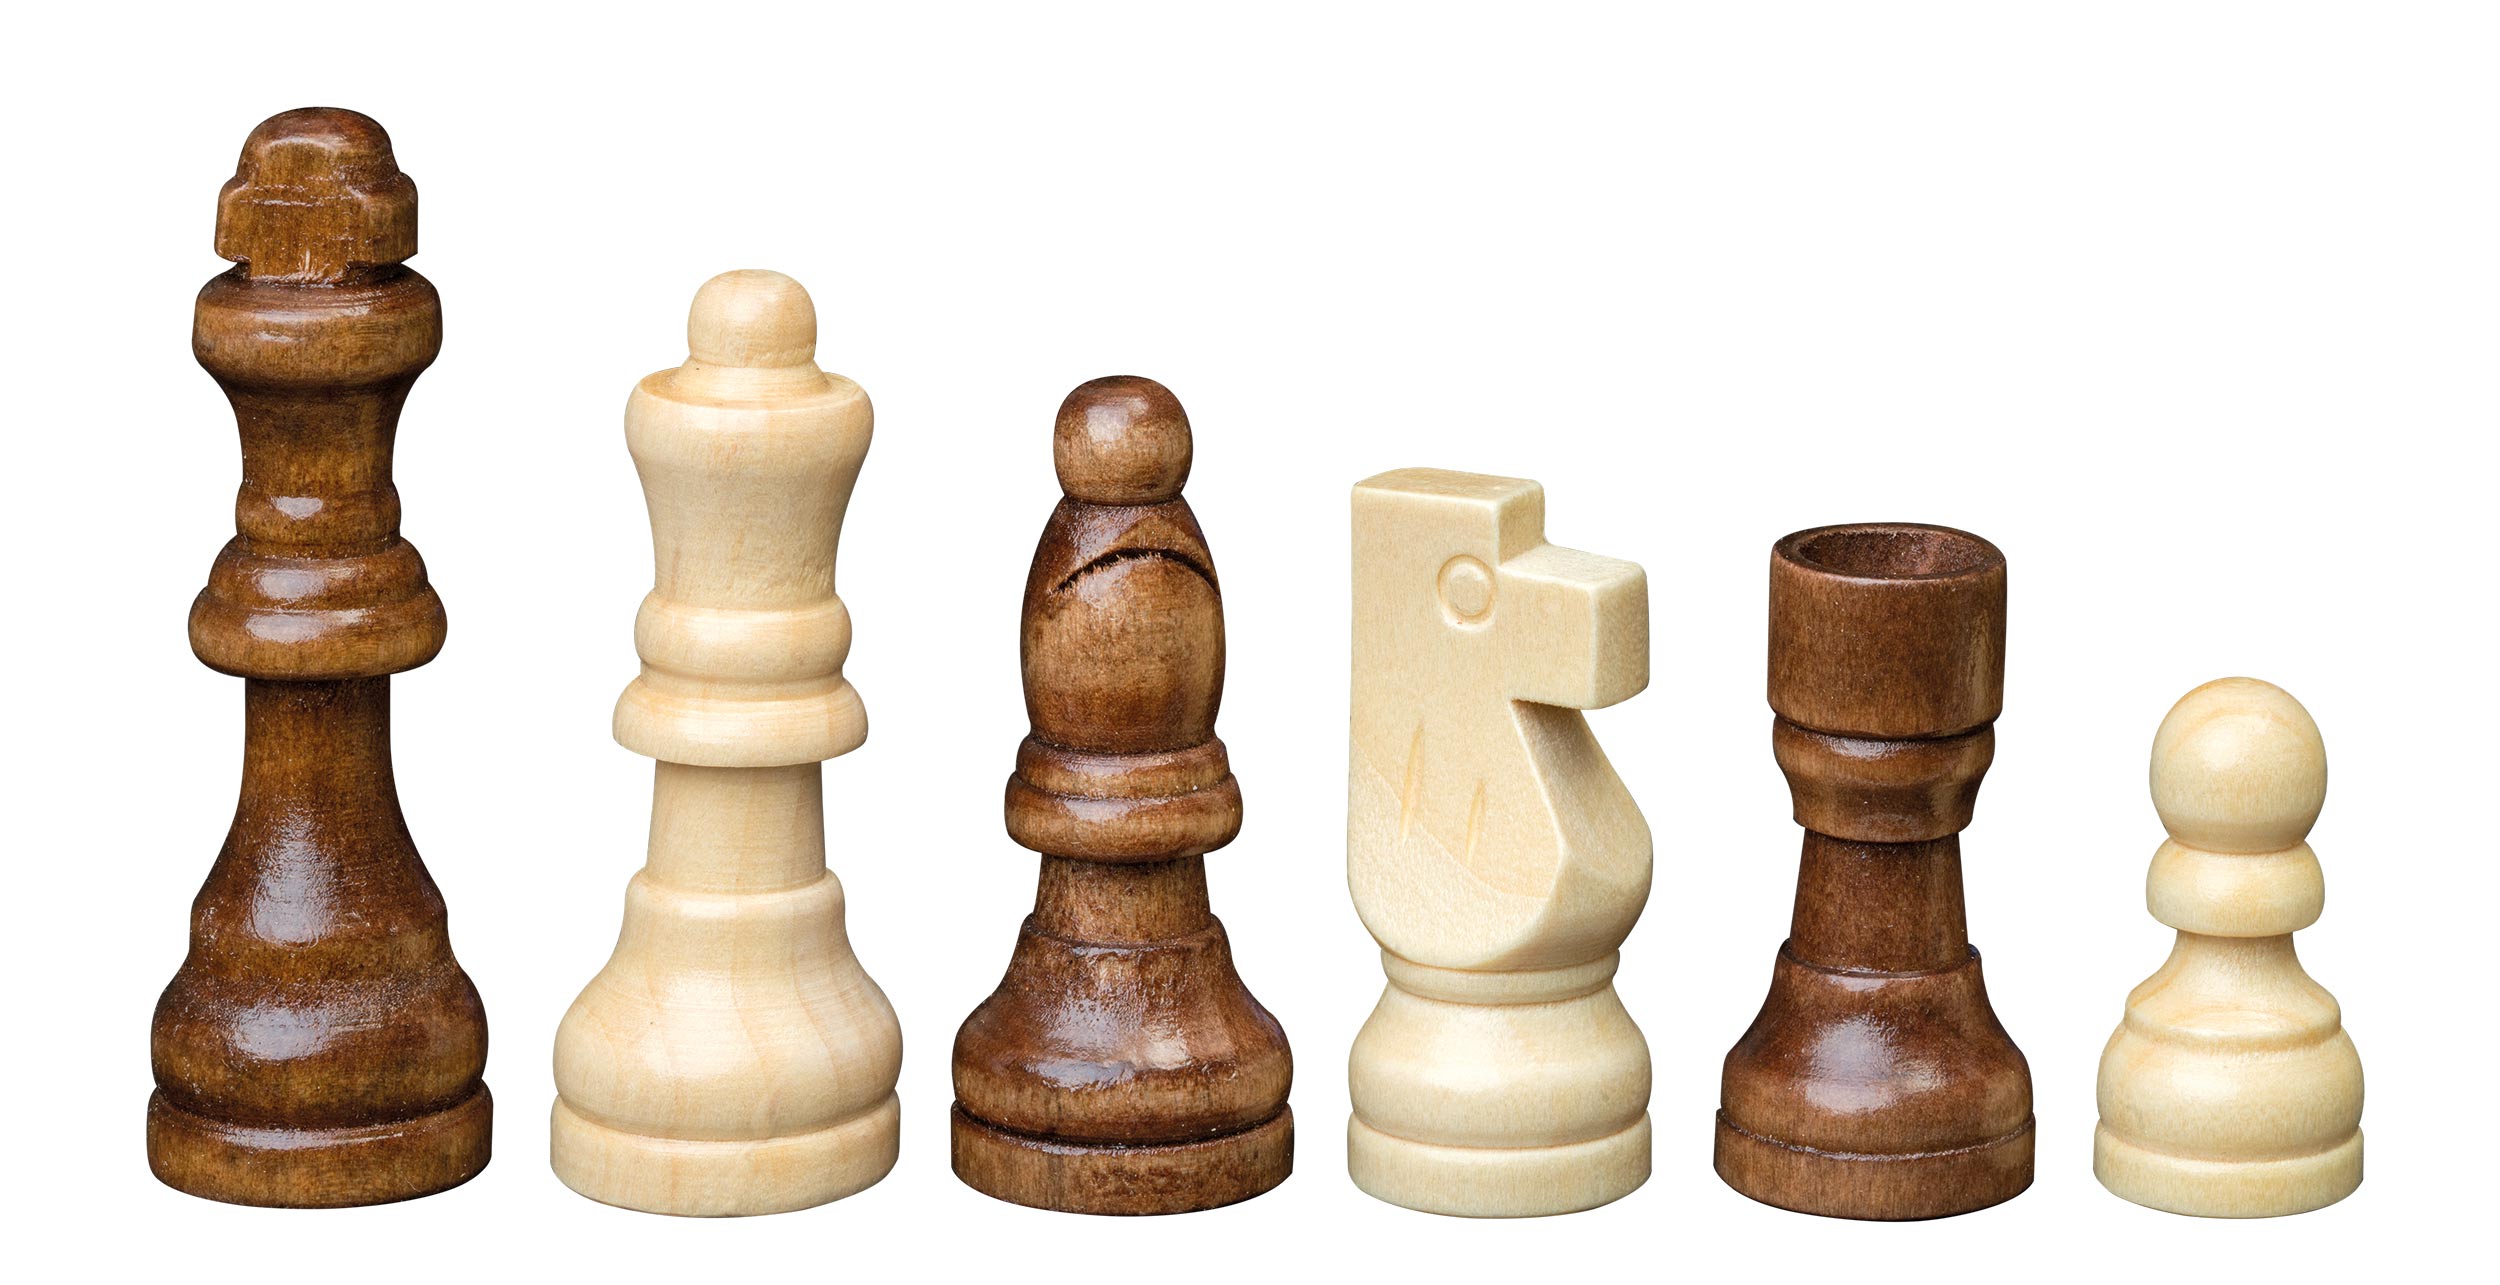 Schachfiguren Remus, Königshöhe 64 mm, in Holzbox